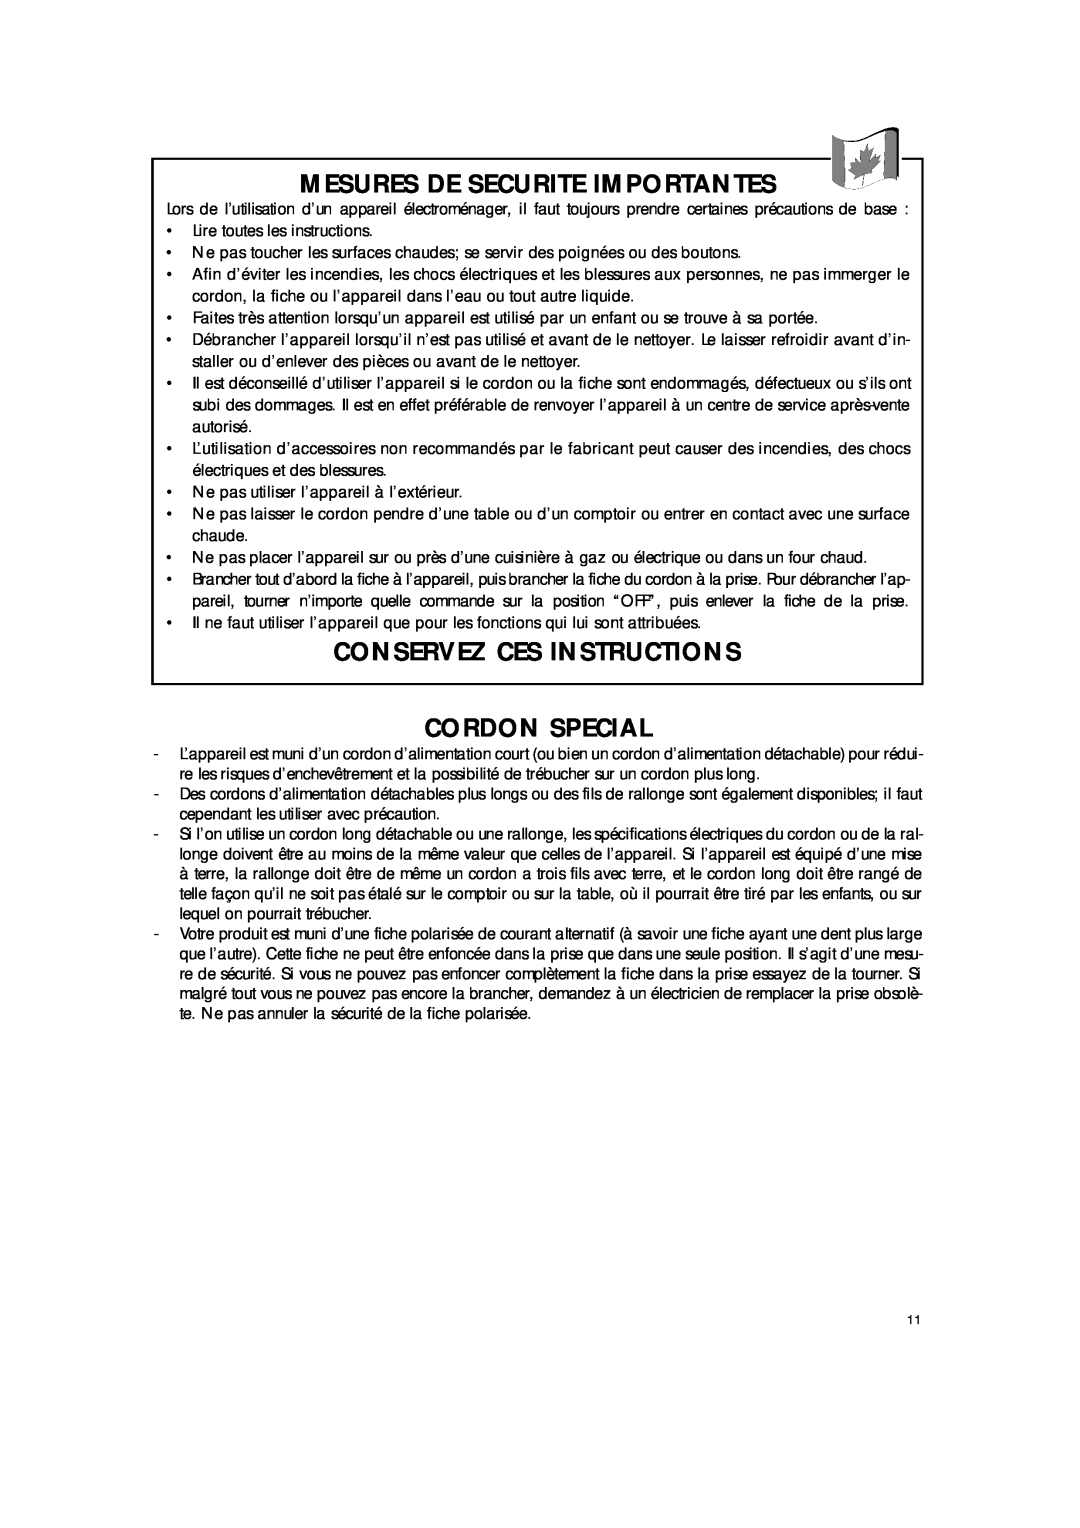 DeLonghi BAR8 manual Mesures De Securite Importantes, Conservez Ces Instructions Cordon Special 